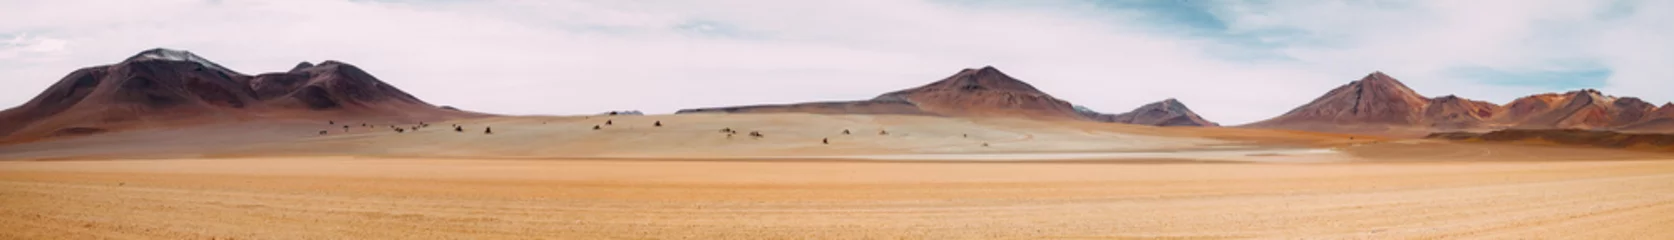 Fototapete Dürre Die Weite des Nichts - Atacama-Wüste - Bolivien